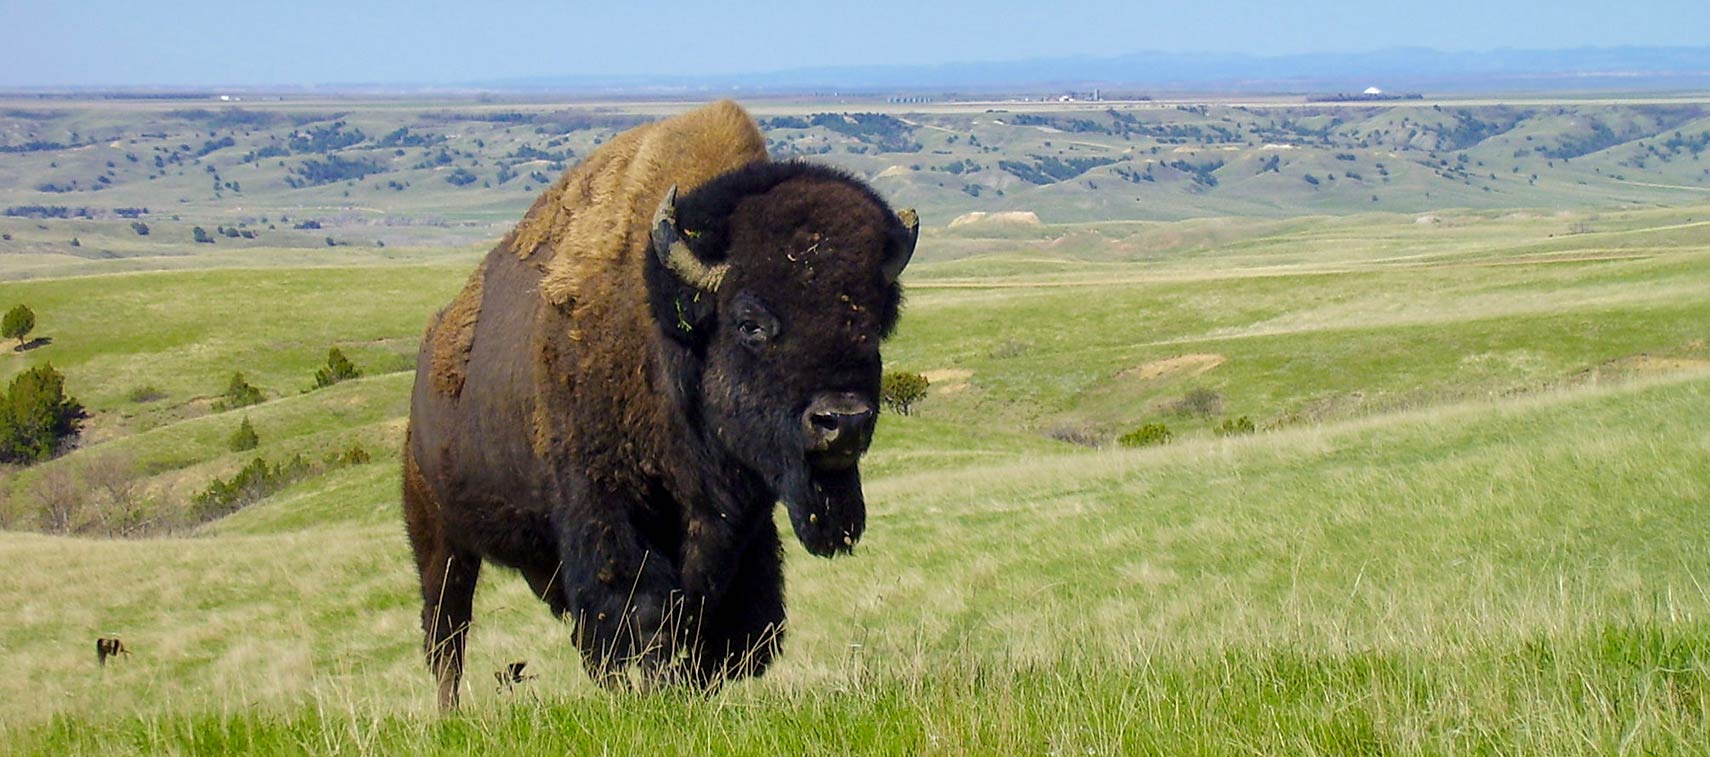 Bison in Badlands National Park in South Dakota